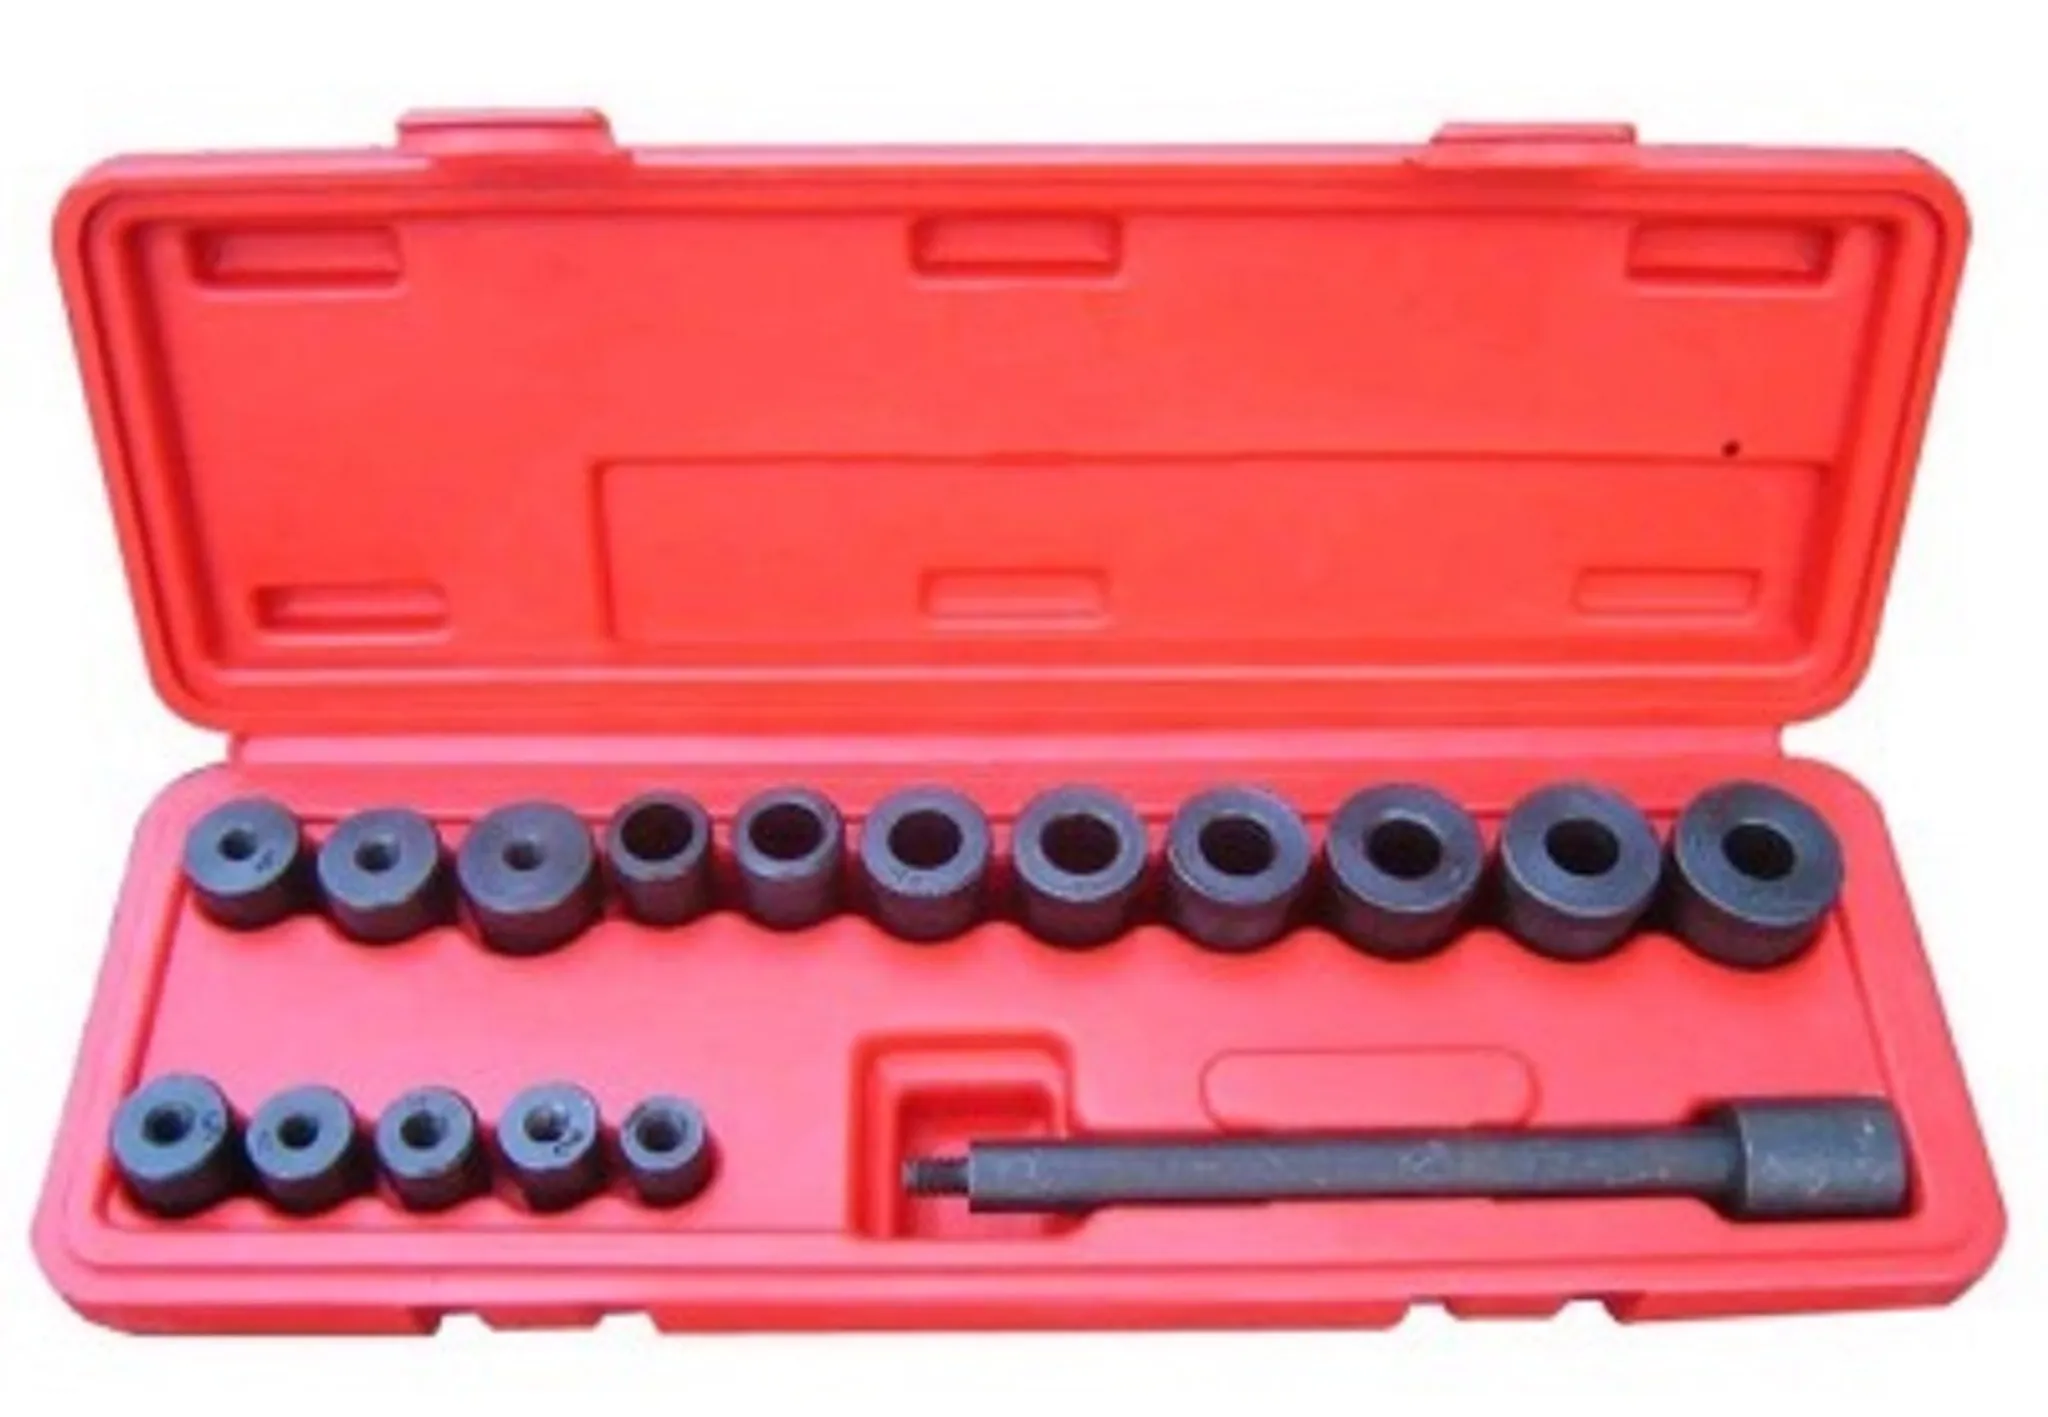 Universal Kupplungs-Zentriersatz mit rotem Koffer 17 teiliges Kupplung Zentrierung Zentriersatz Zentrierwerkzeug 